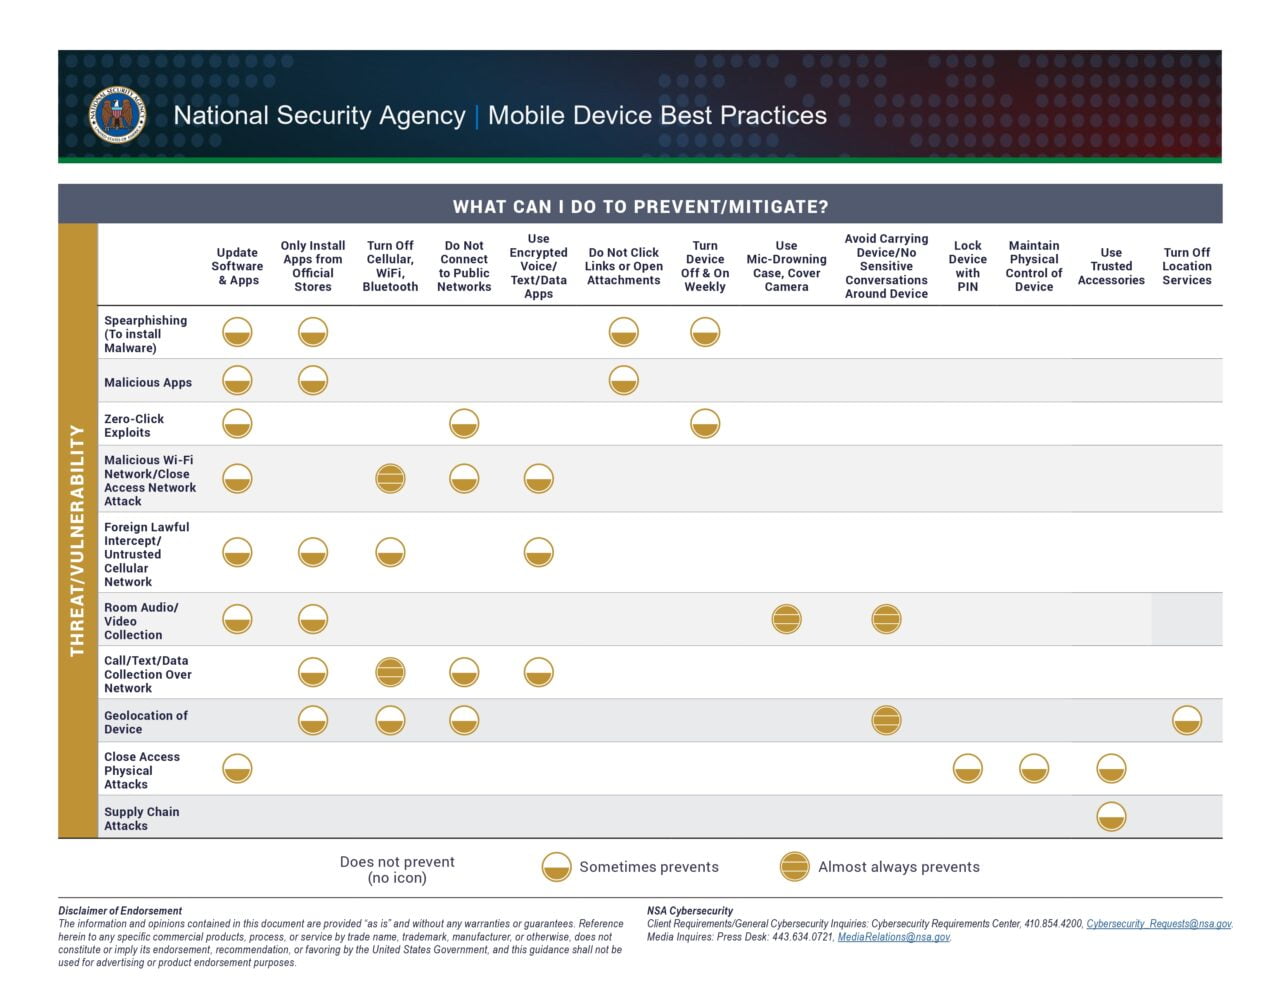 Diagram przedstawiający najlepsze praktyki NSA dotyczące urządzeń mobilnych pokazujący, które środki zapobiegają różnym rodzajom zagrożeń, takich jak spearphishing, złośliwe aplikacje, ataki sieci Wi-Fi, przechwytywanie danych audio/wideo, geolokalizacja urządzeń i inne.